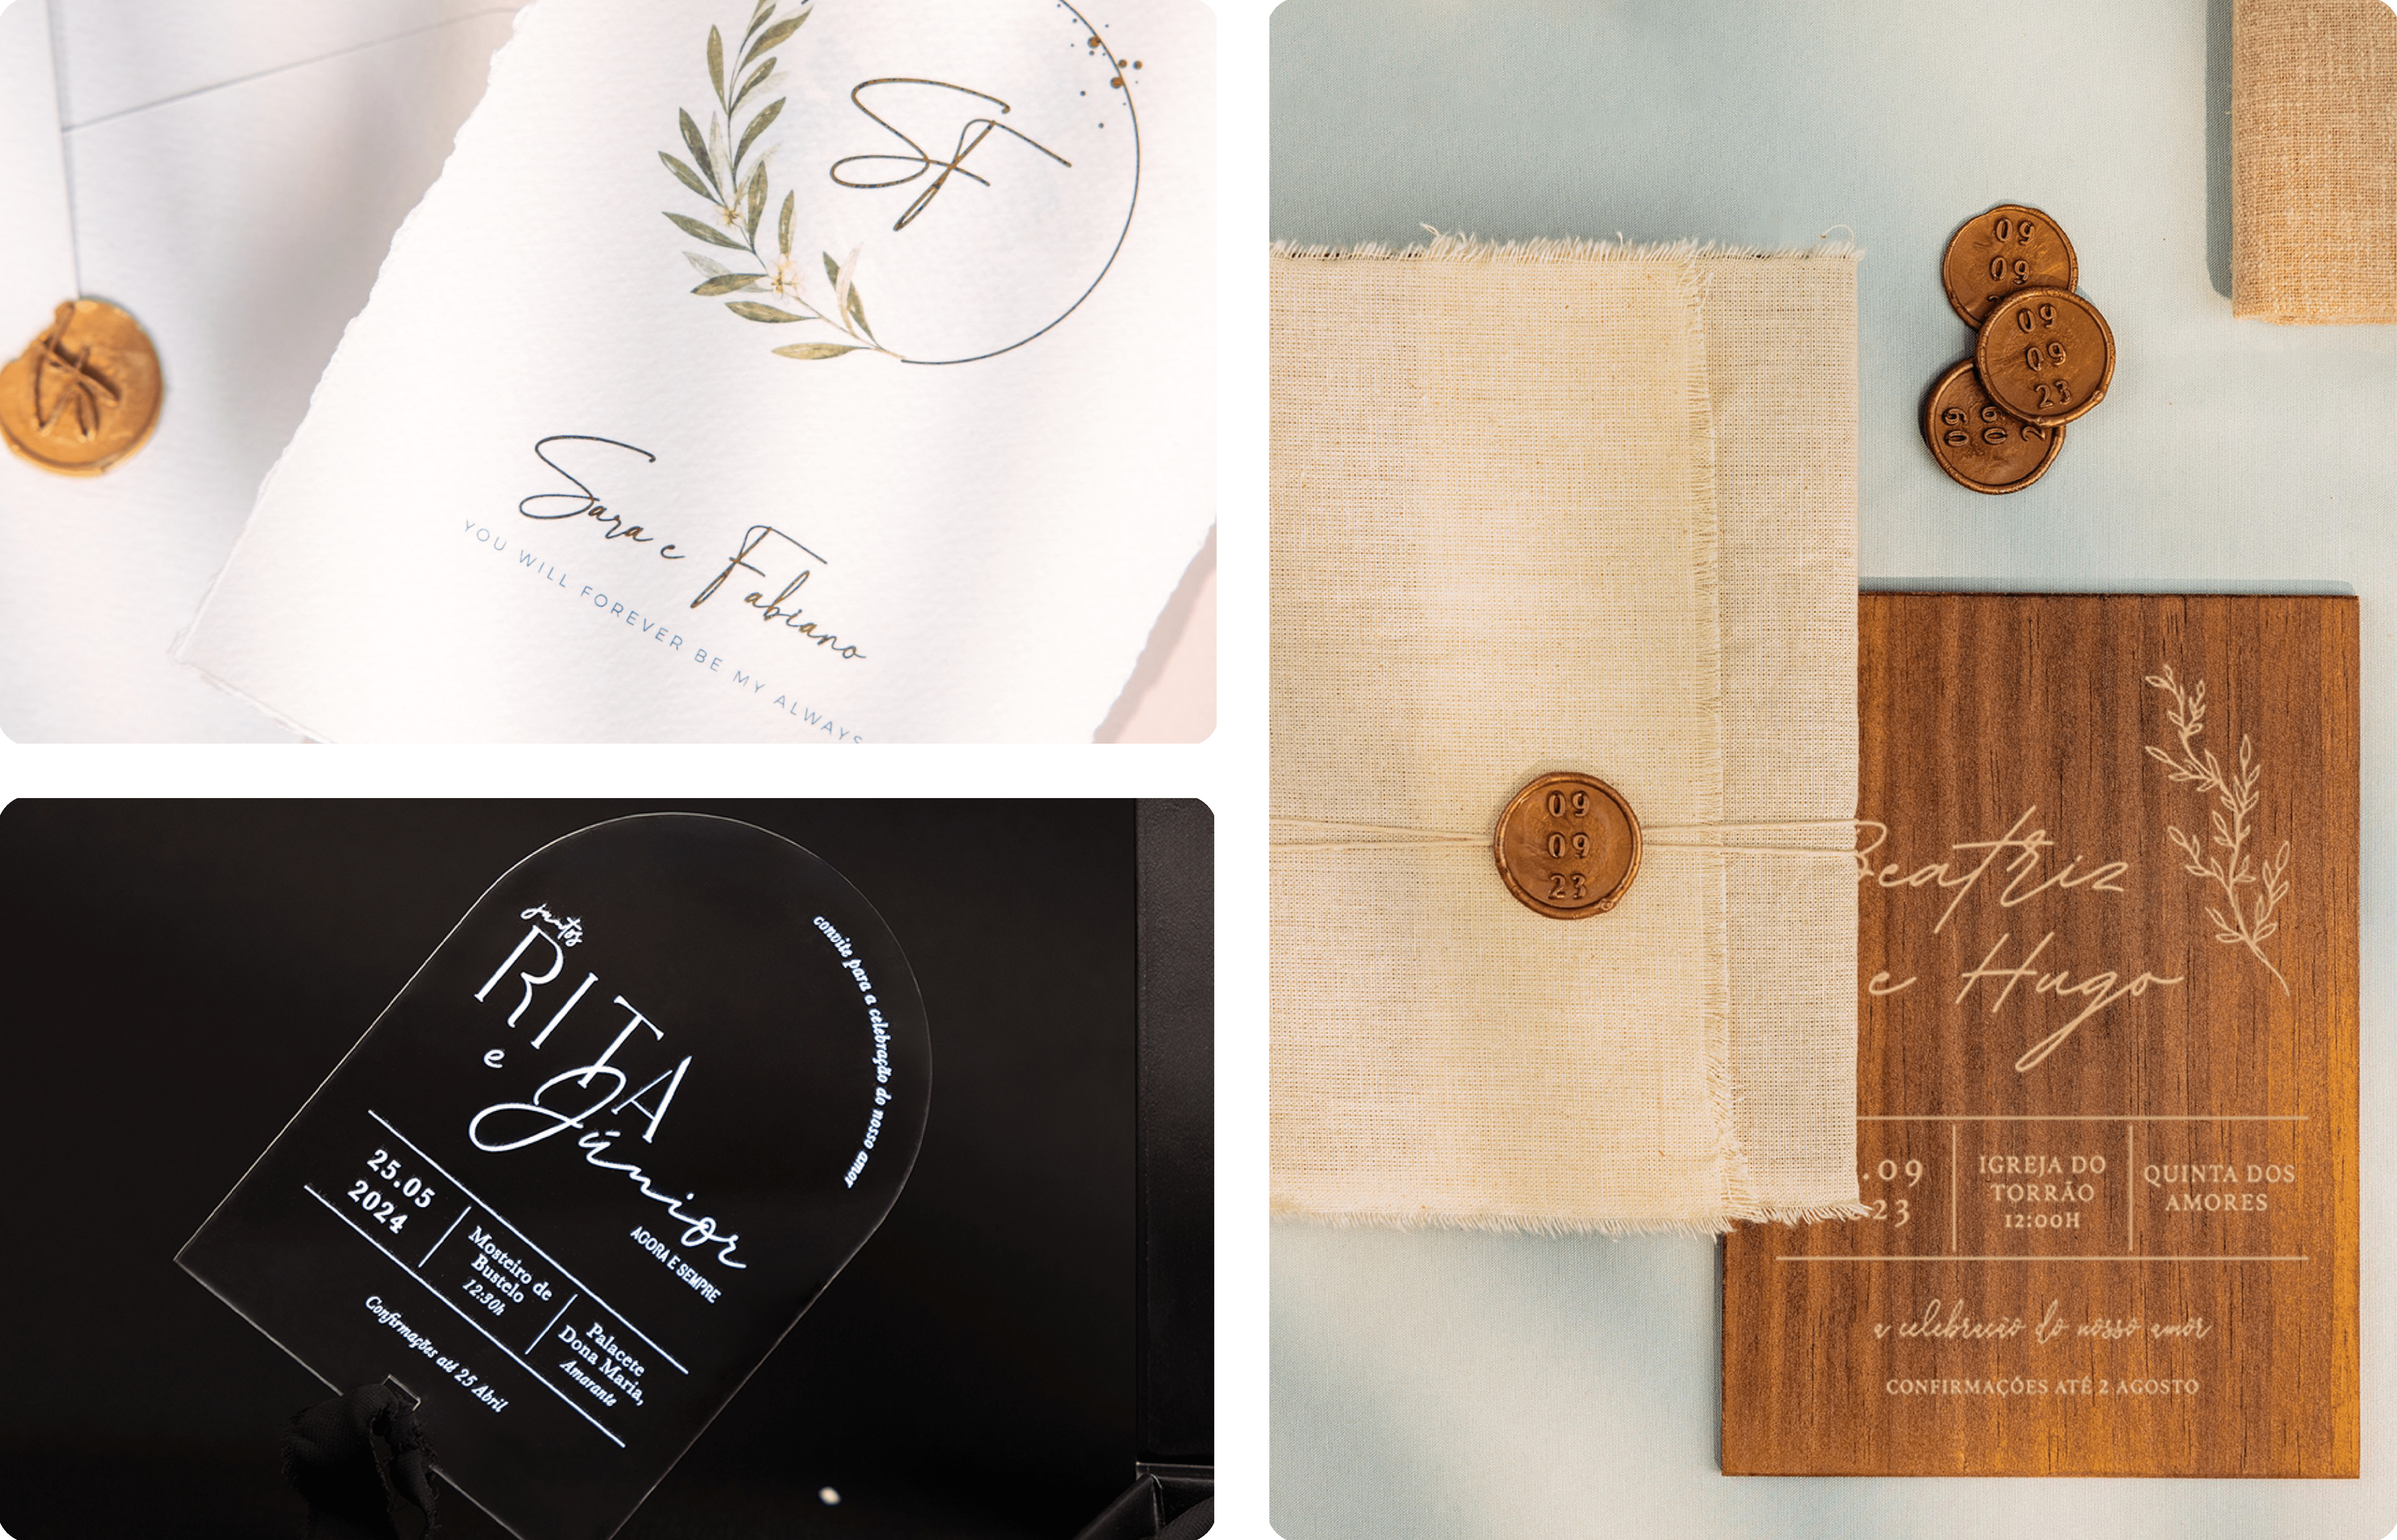 Convites de Casamentos em acrílico e papel algodão com efeito rasgado, convites em madeira forrados com linho com lacre dourado e fio natural